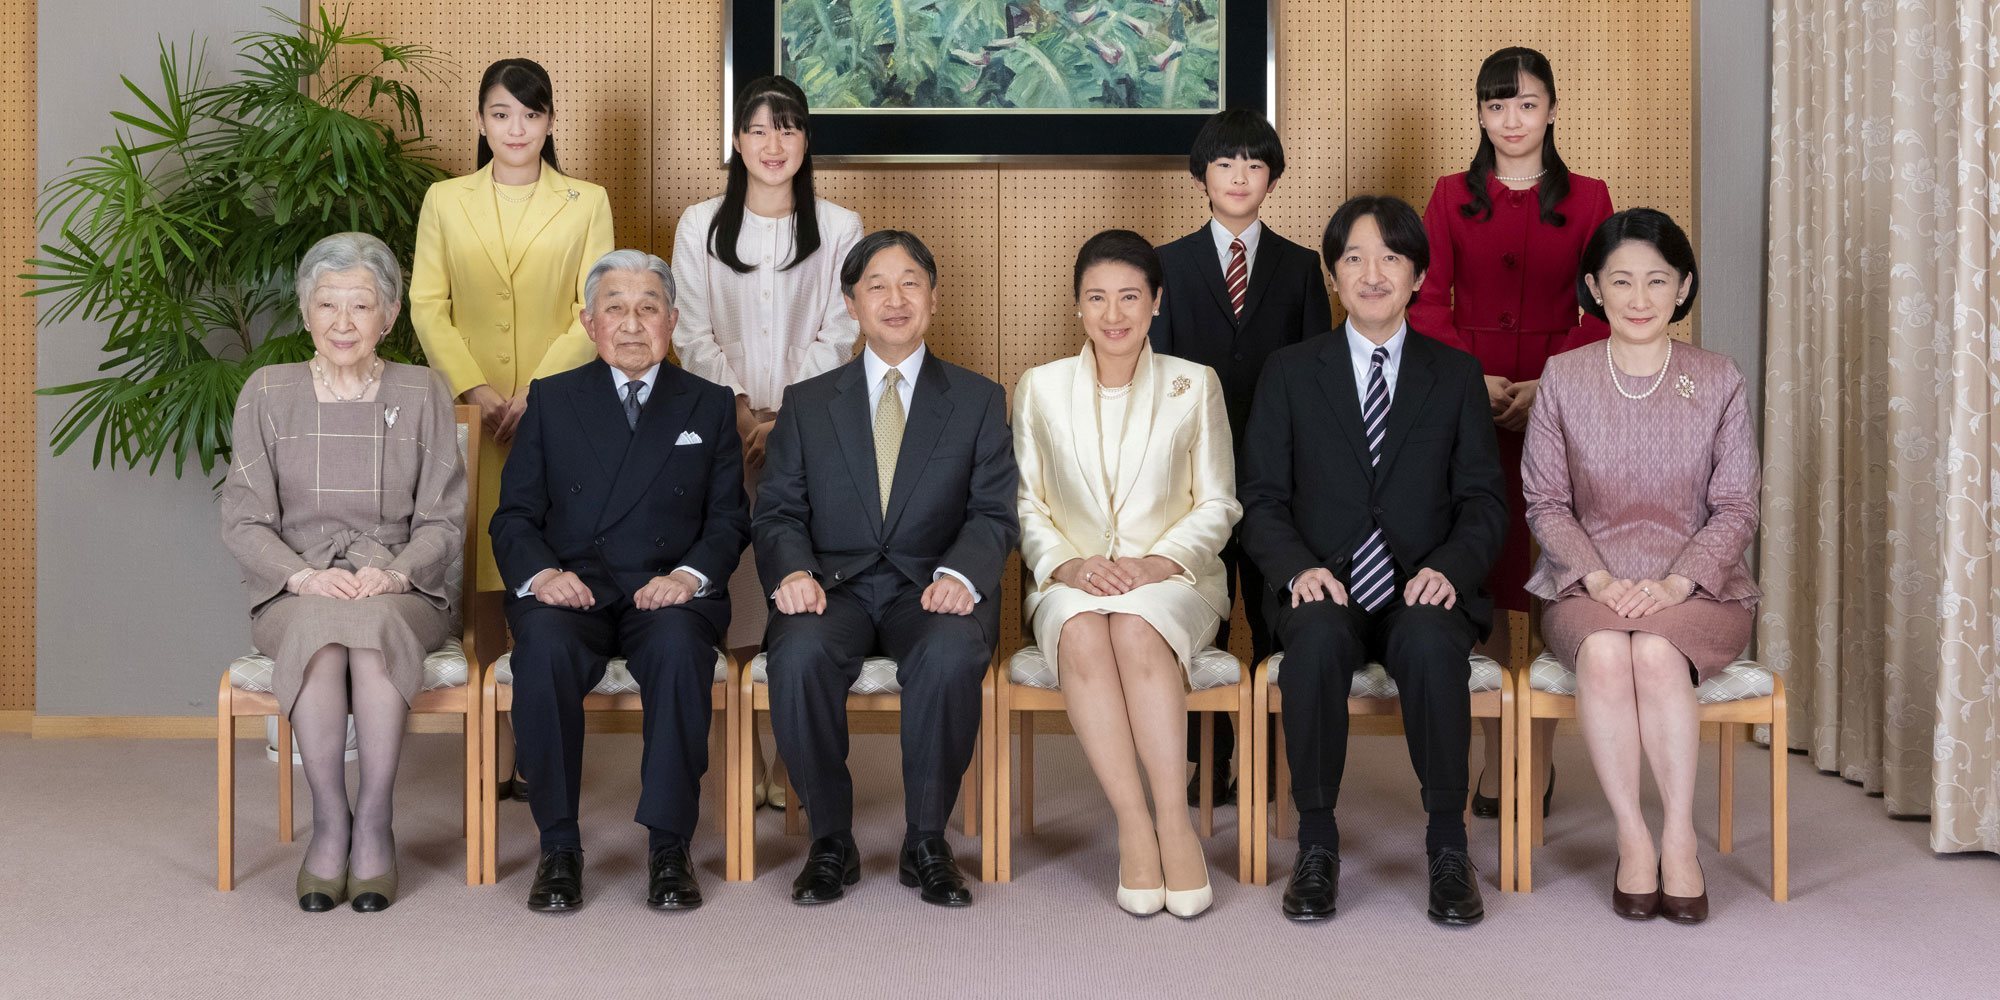 La Familia Imperial de Japón: palabras de Masako, posado familiar, boda aprobada y una esperanza para las princesas